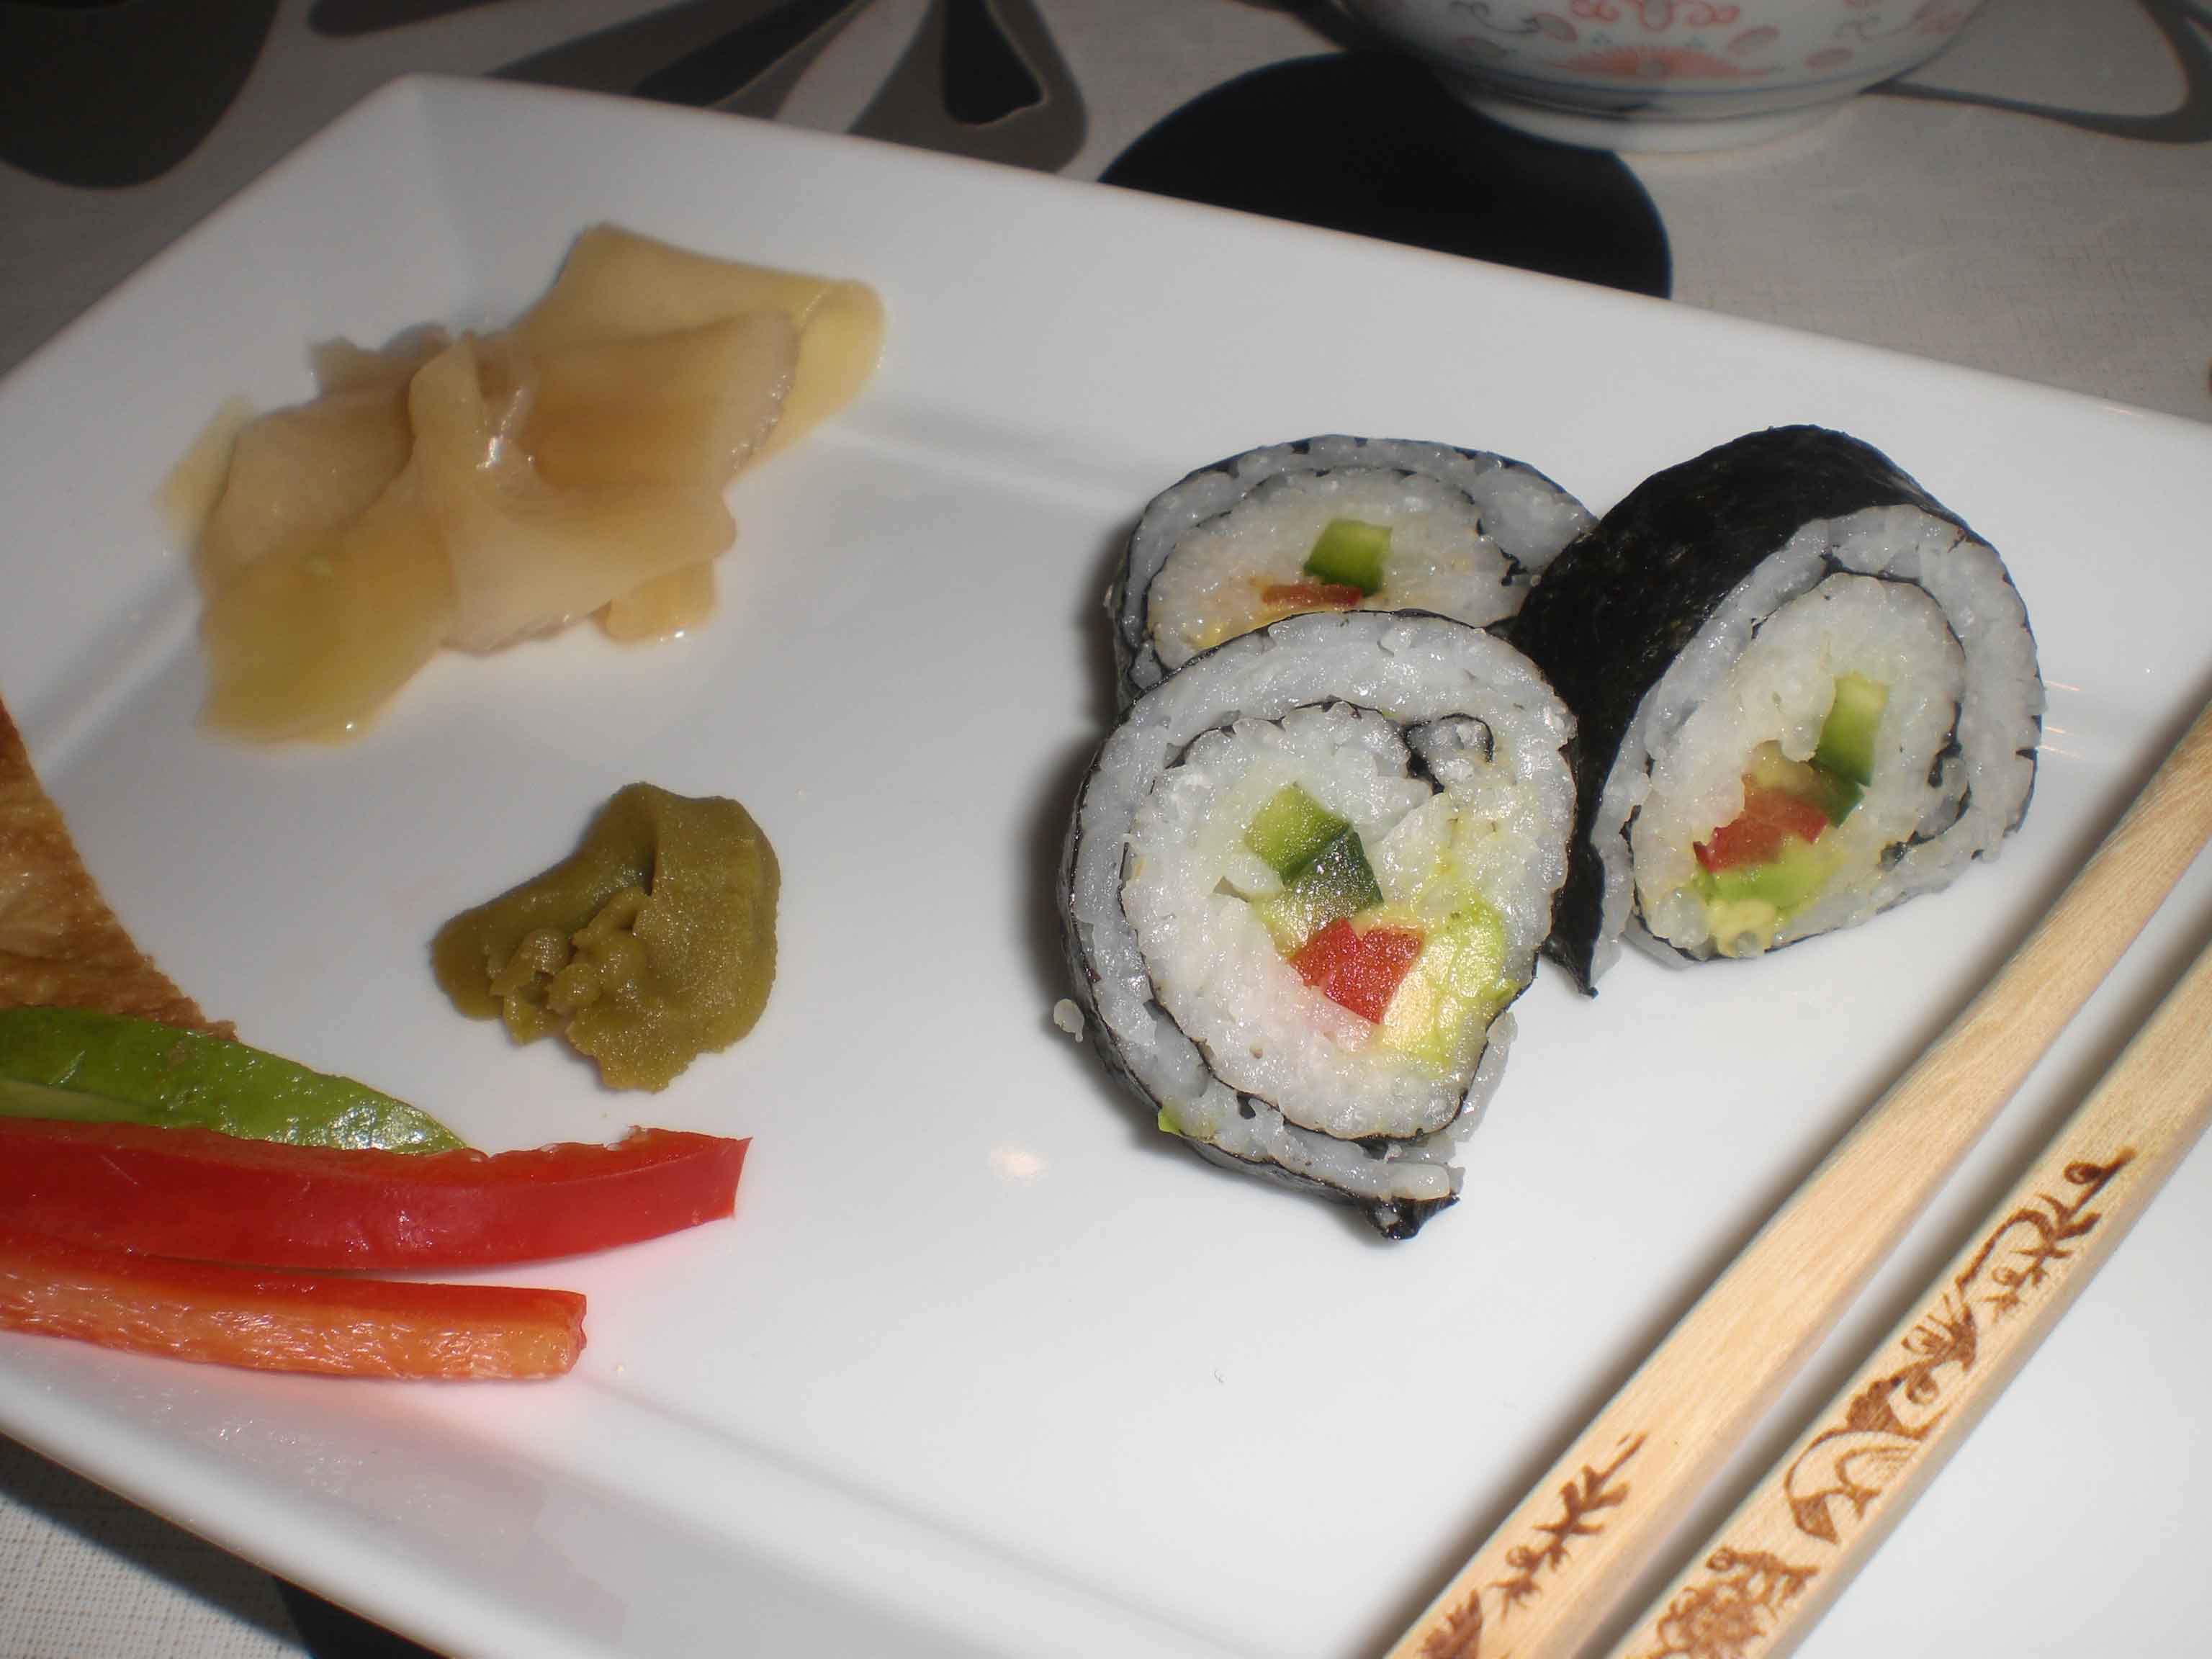 Servér sushi med ingefær, wasabi og soyasauce.